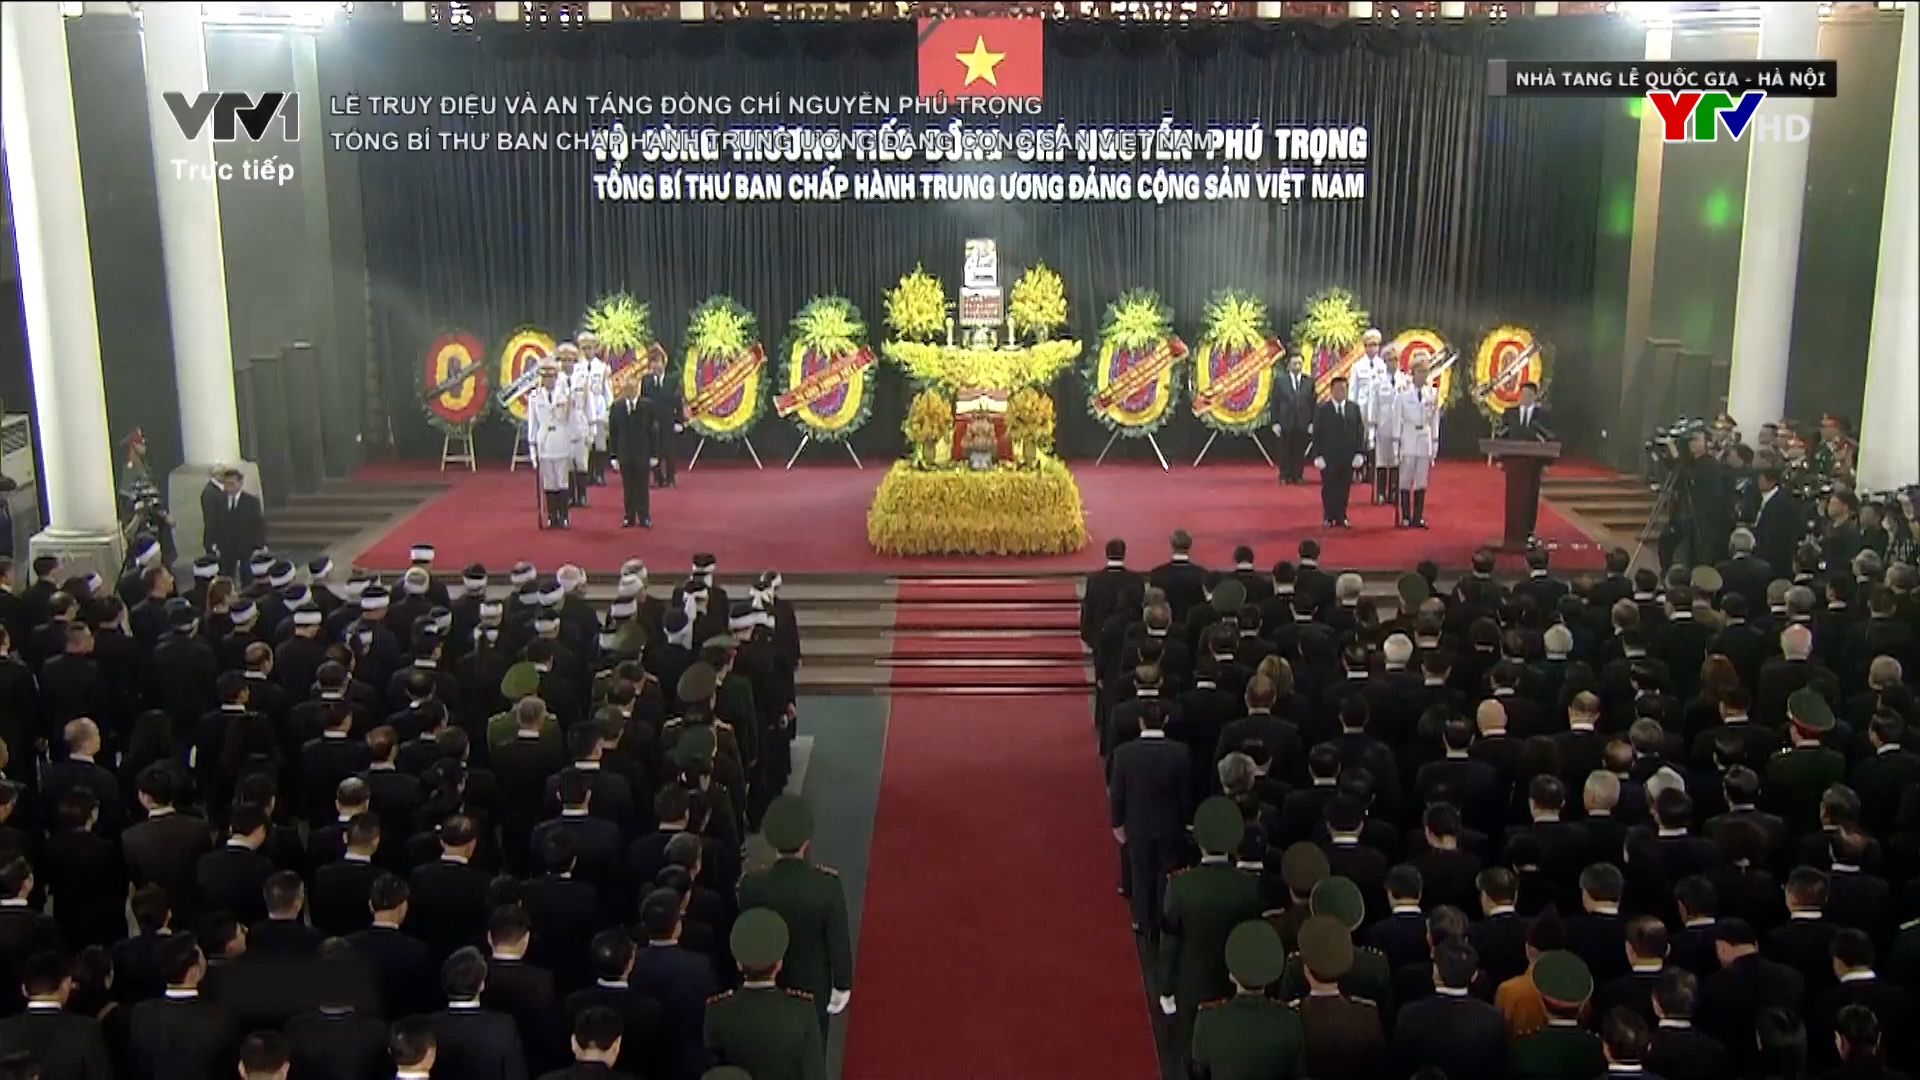 Cử hành trọng thể Lễ truy điệu và Lễ an táng Tổng Bí thư Nguyễn Phú Trọng theo nghi thức Quốc tang